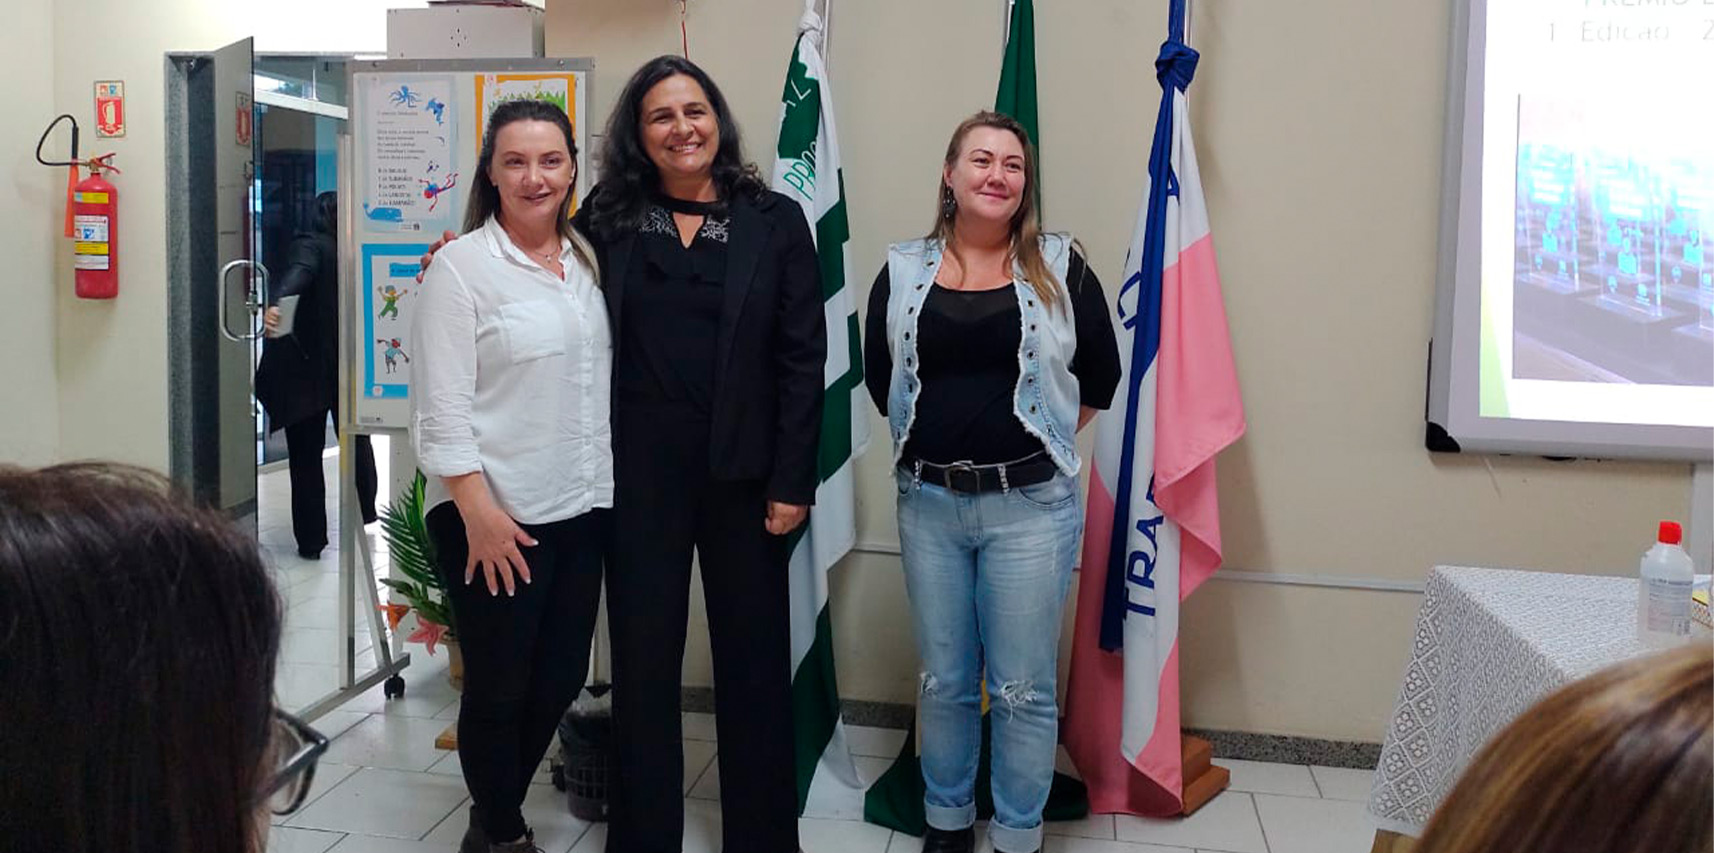 Representantes de Vargem Alta participam de encontro sobre boas práticas escolares em Jerônimo Monteiro